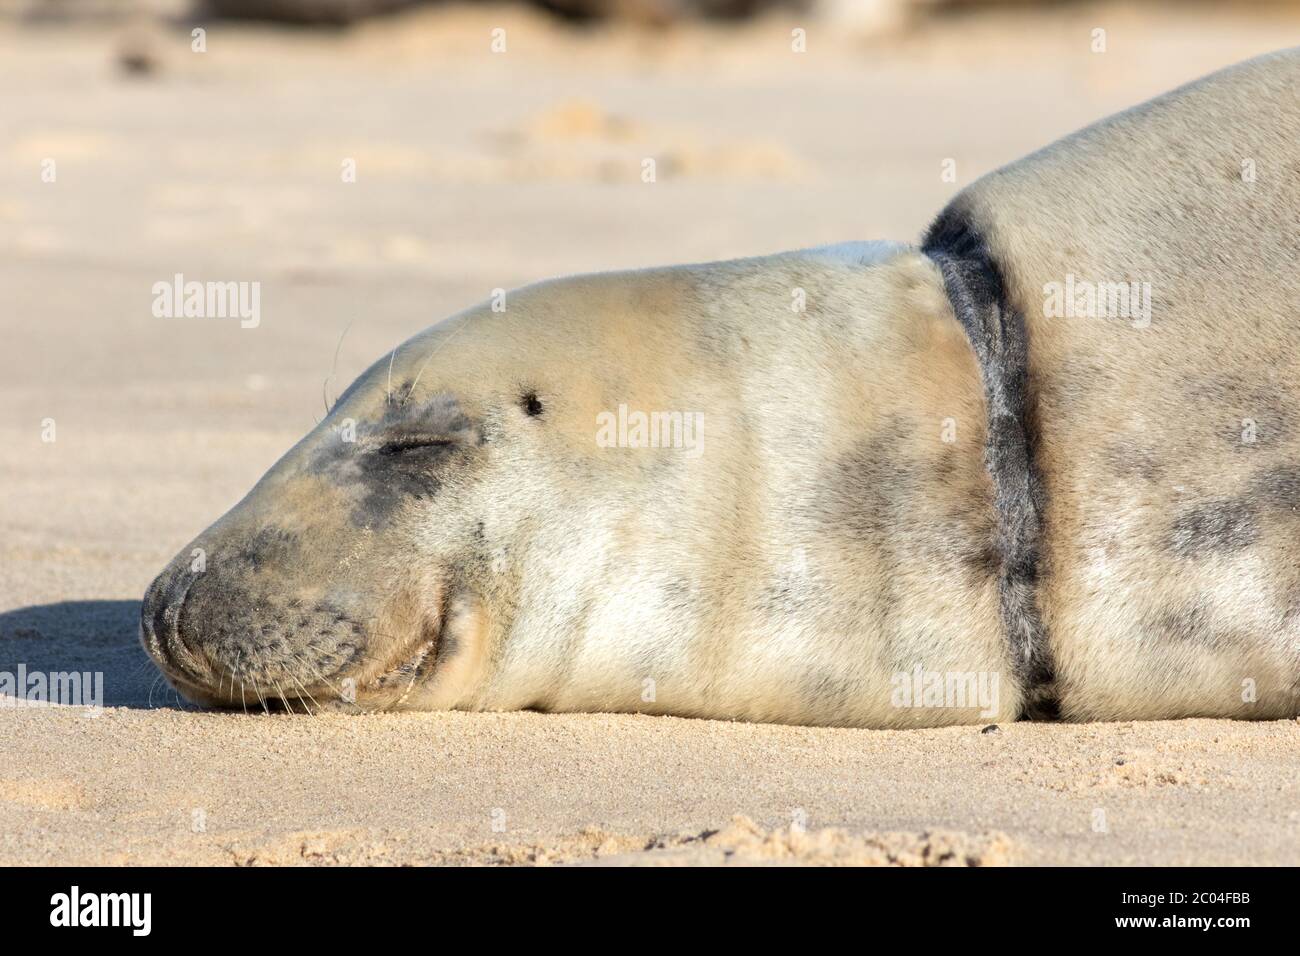 Verletzte oder tote Robbe mit Halswunde, die durch Verschmutzung der Meere durch Plastik verursacht wird. Gerettete Tier mit alten geheilt Verletzungen Narbe. Schöner grauer Seal Kopf in der Nähe Stockfoto